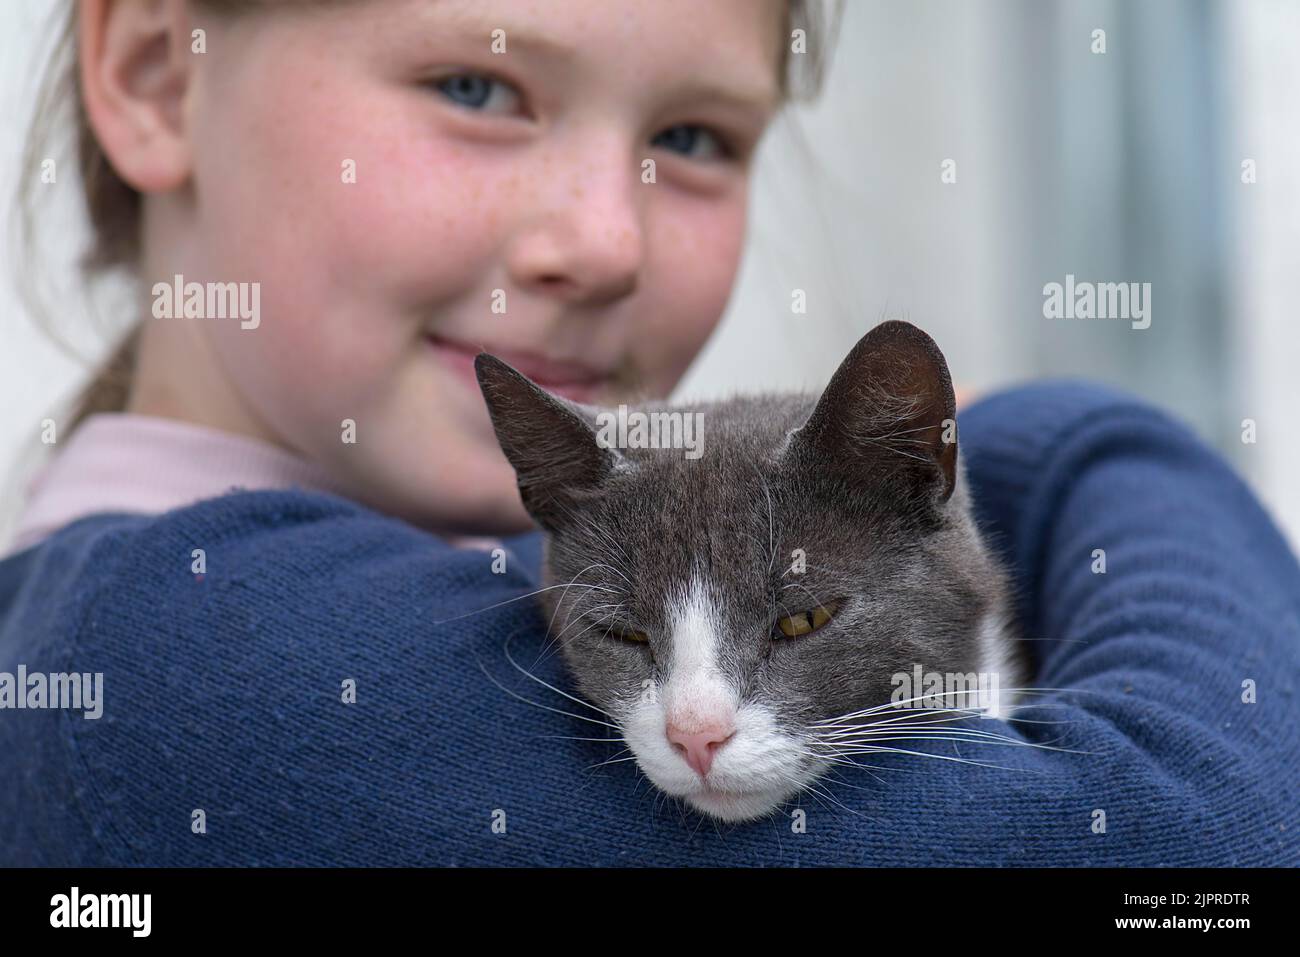 Fille, 10 ans, tenant un chat, Mecklembourg-Poméranie occidentale, Allemagne Banque D'Images